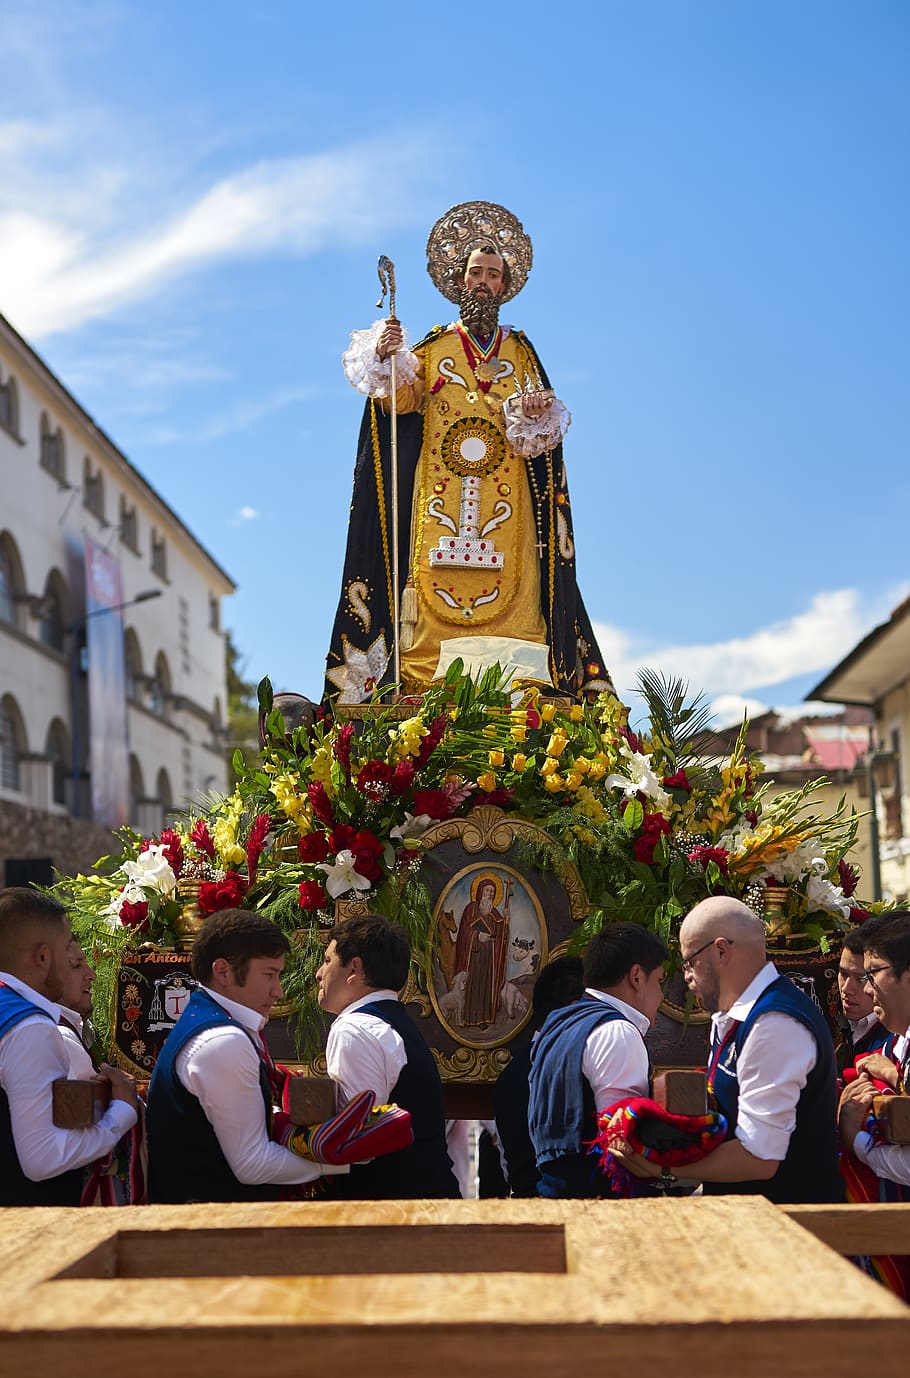 Le Corpus Christi<br />
Une tradition coloniale à Cusco